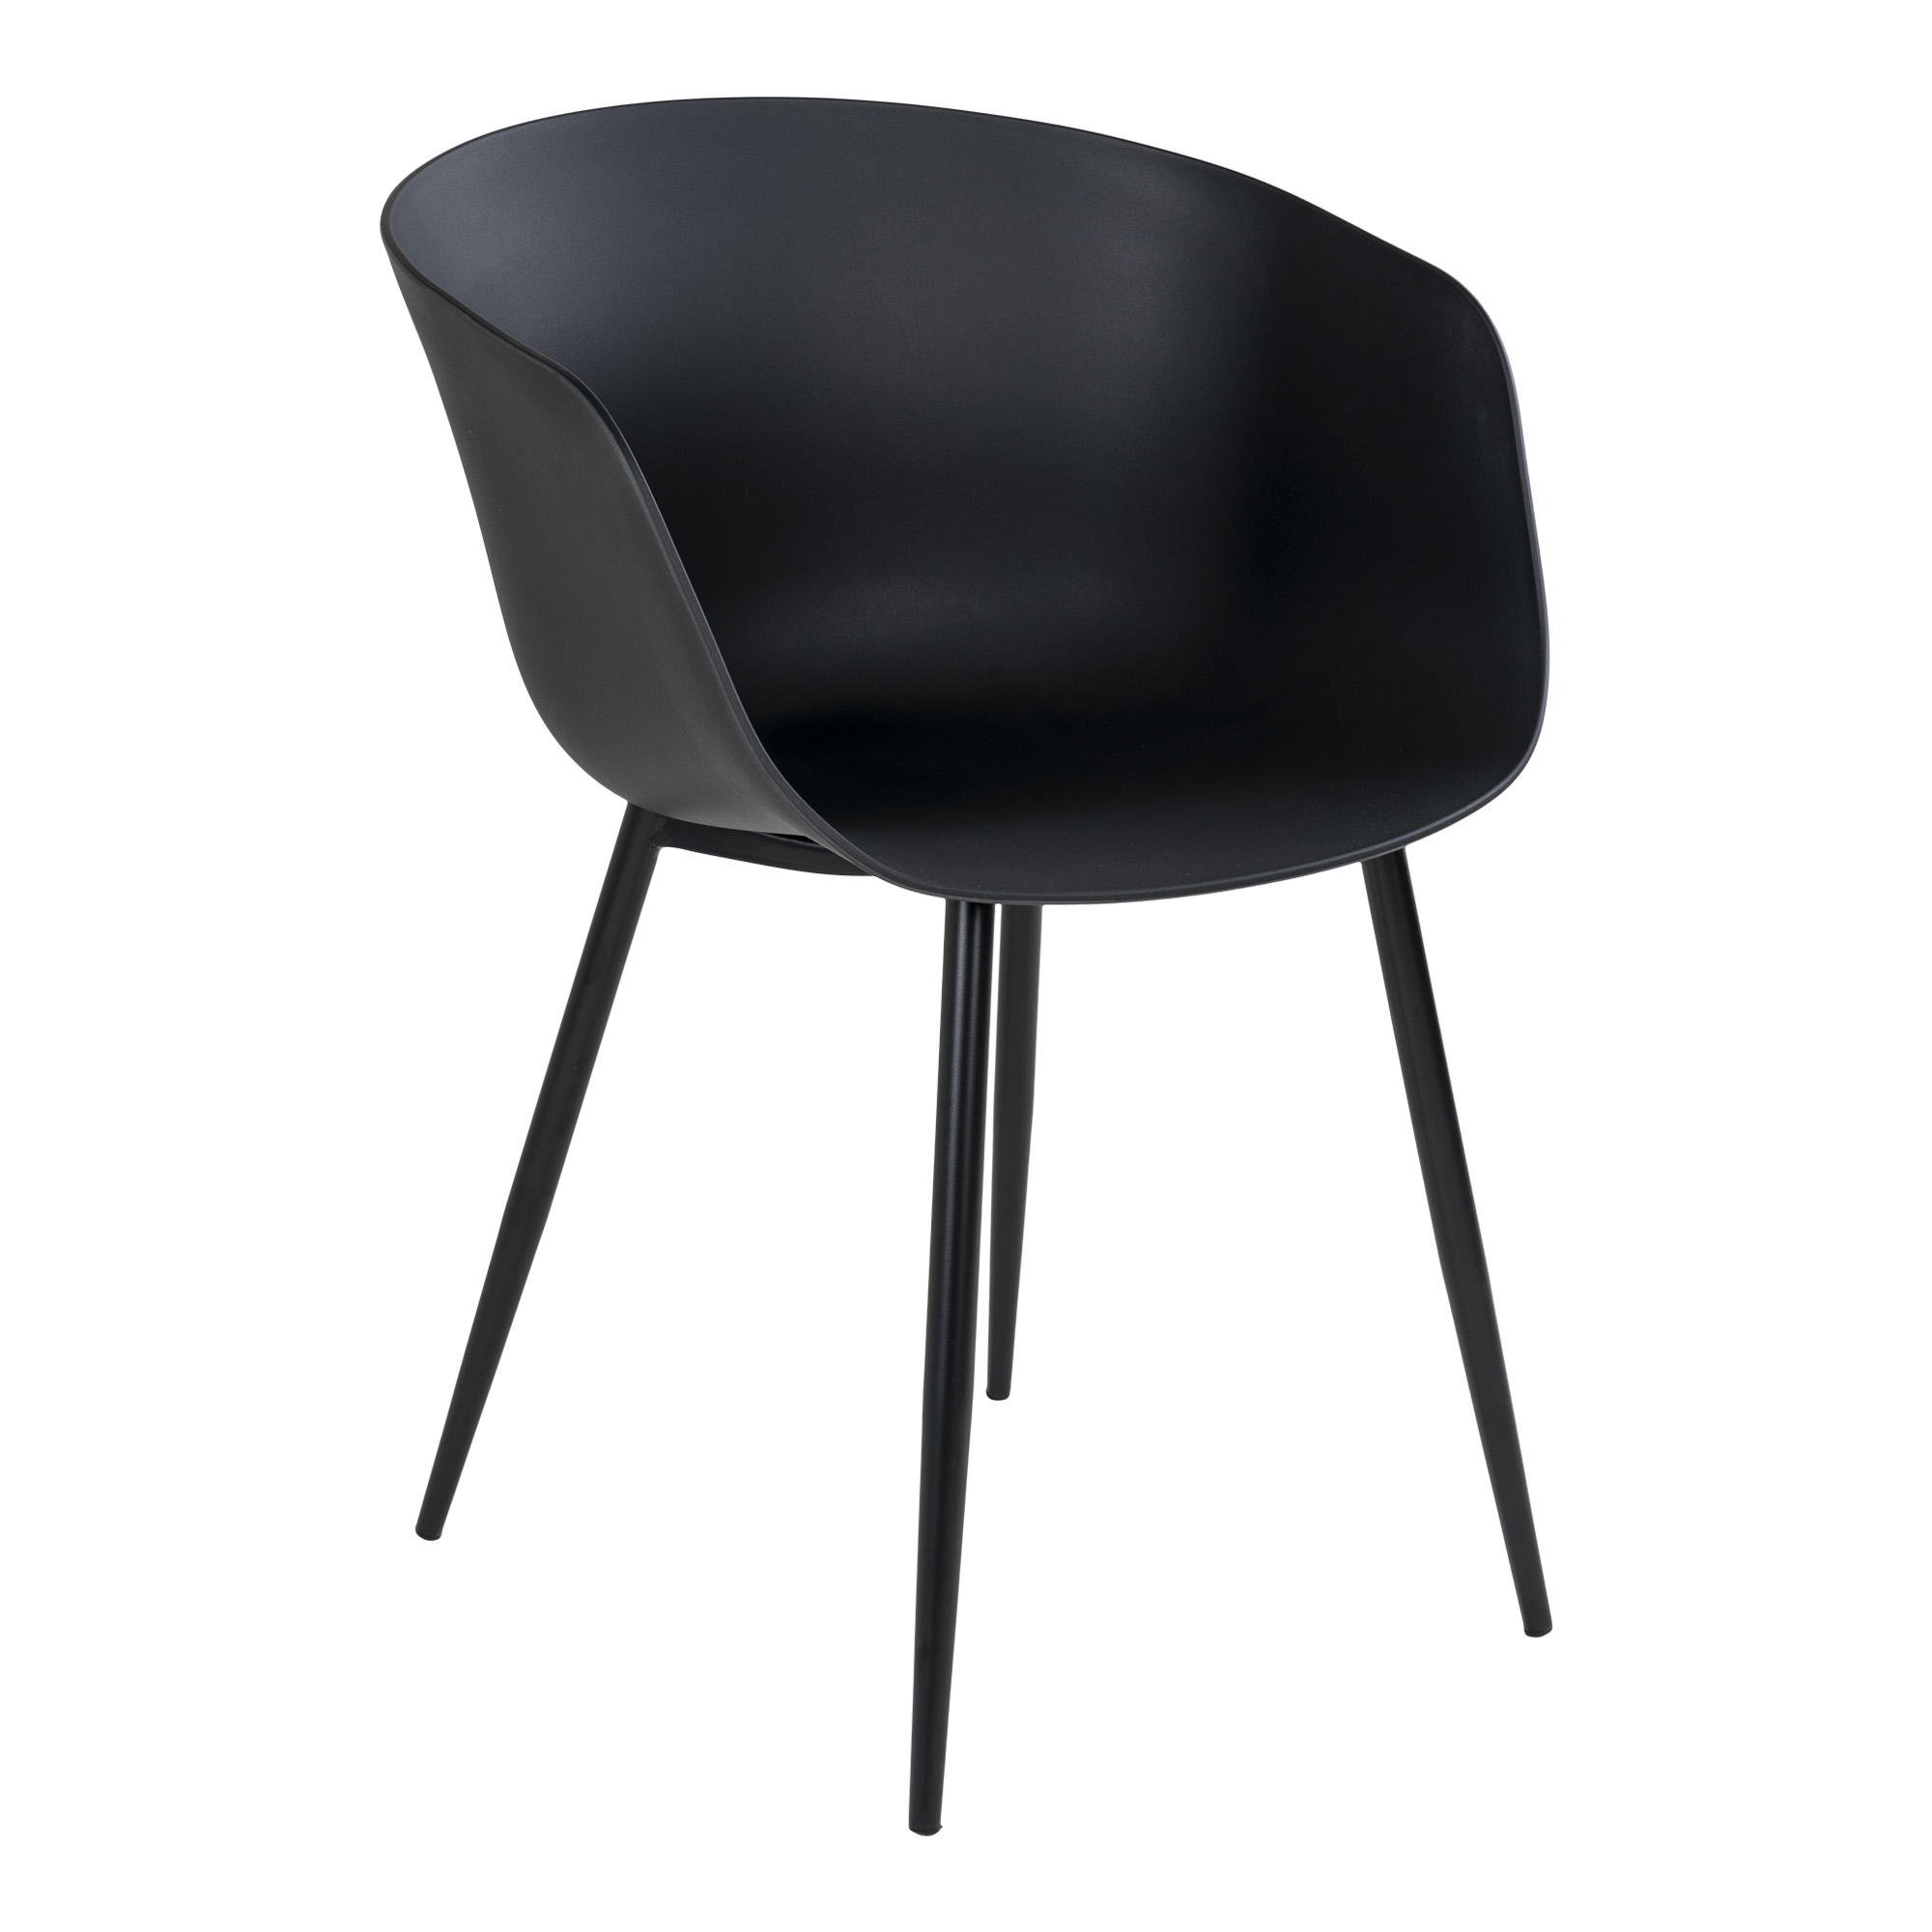 4: HOUSE NORDIC Roda spisebordsstol, m. armlæn - sort plastik og sort stål